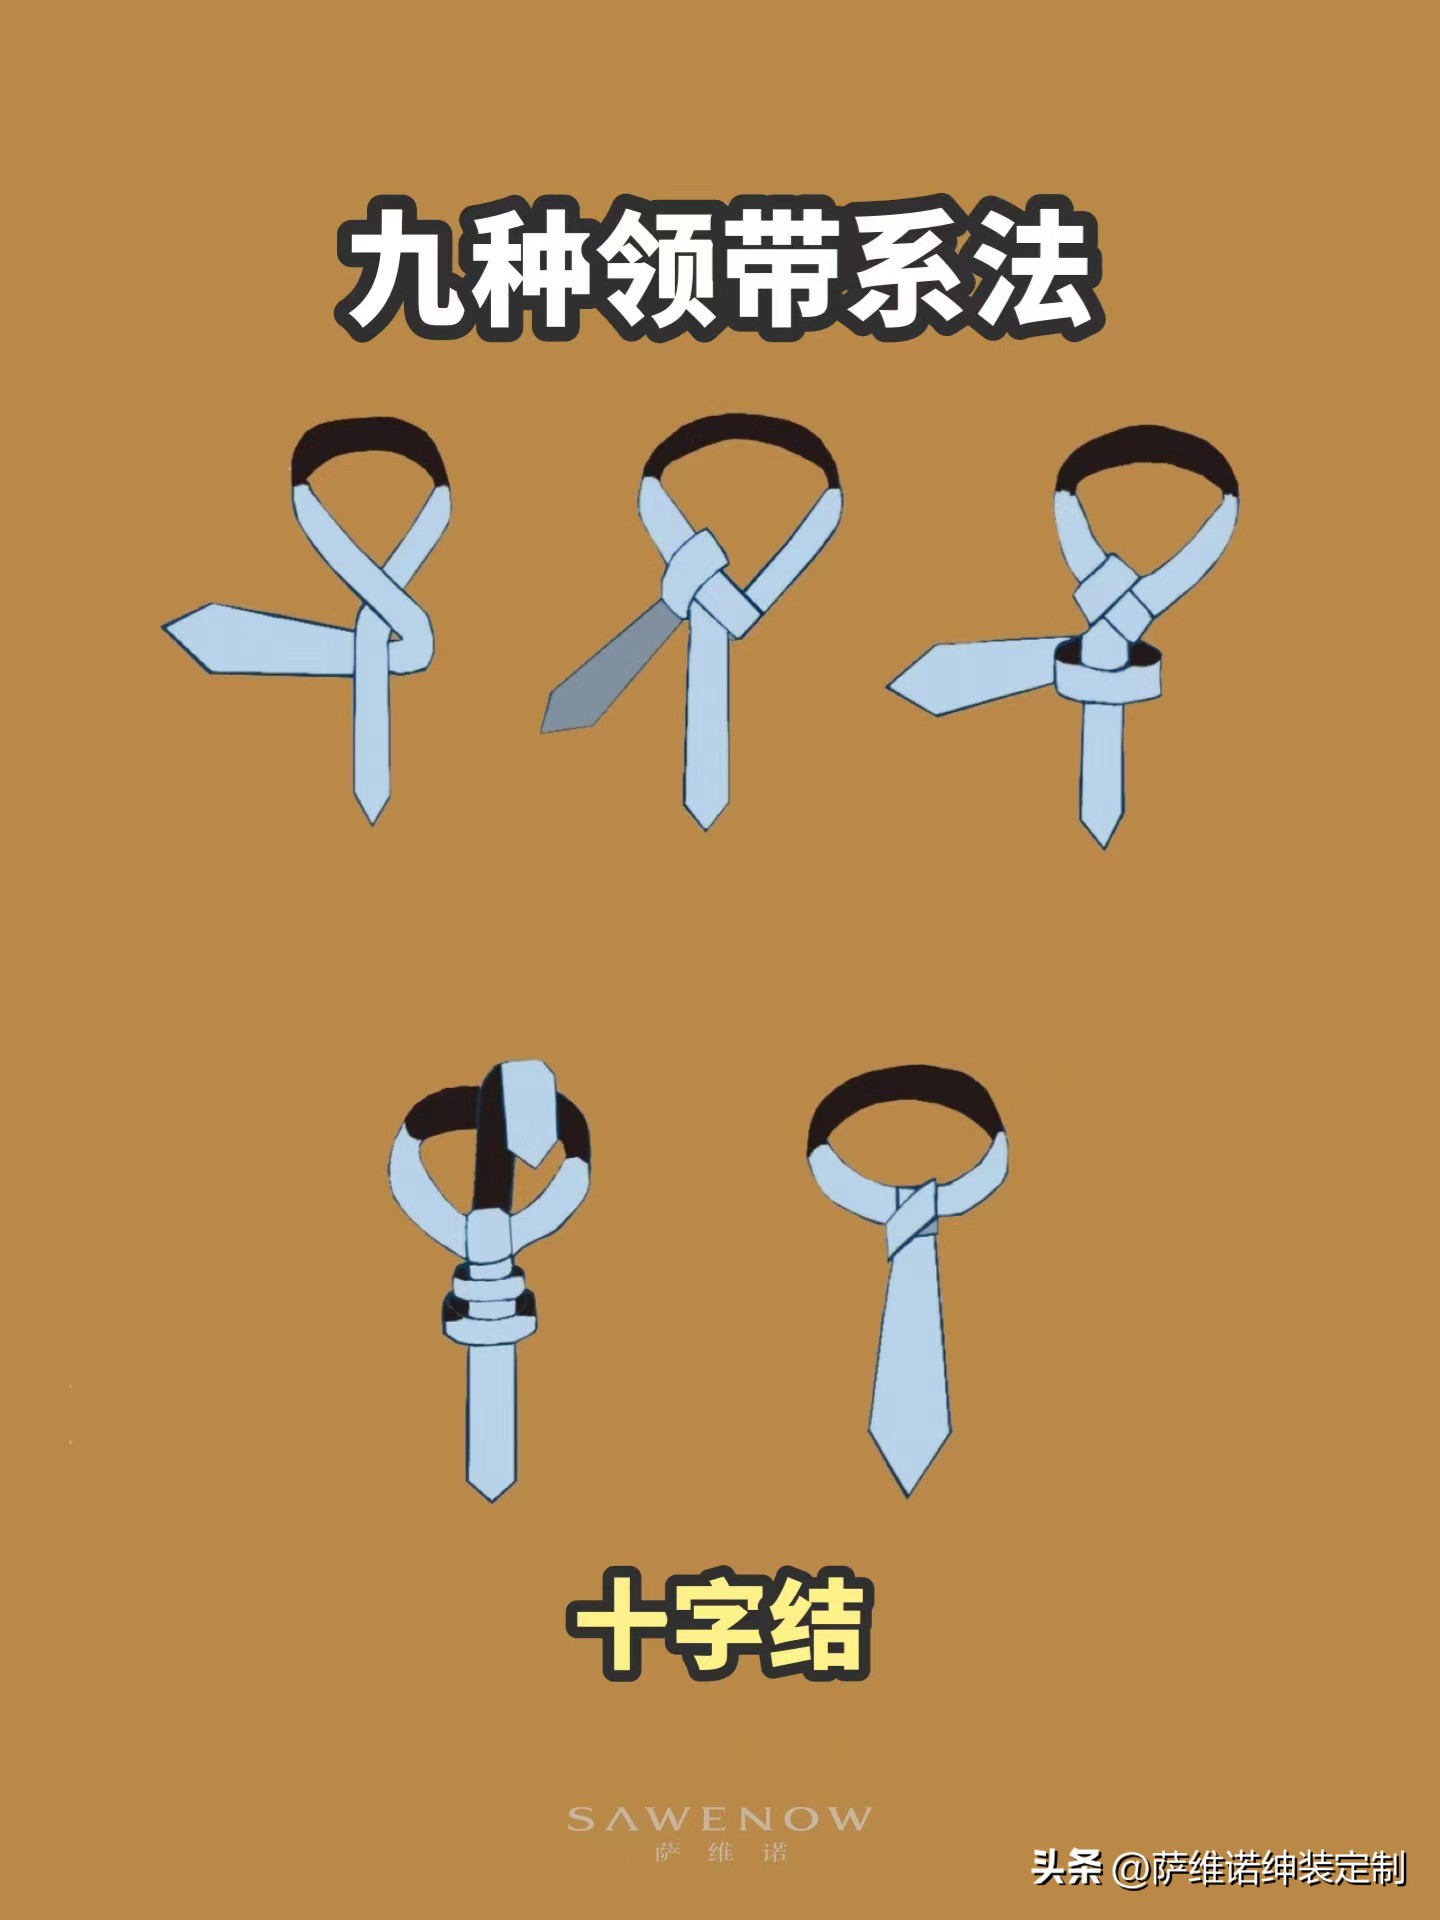 如何打温莎结领带，如何系领带「温莎结领带打法」